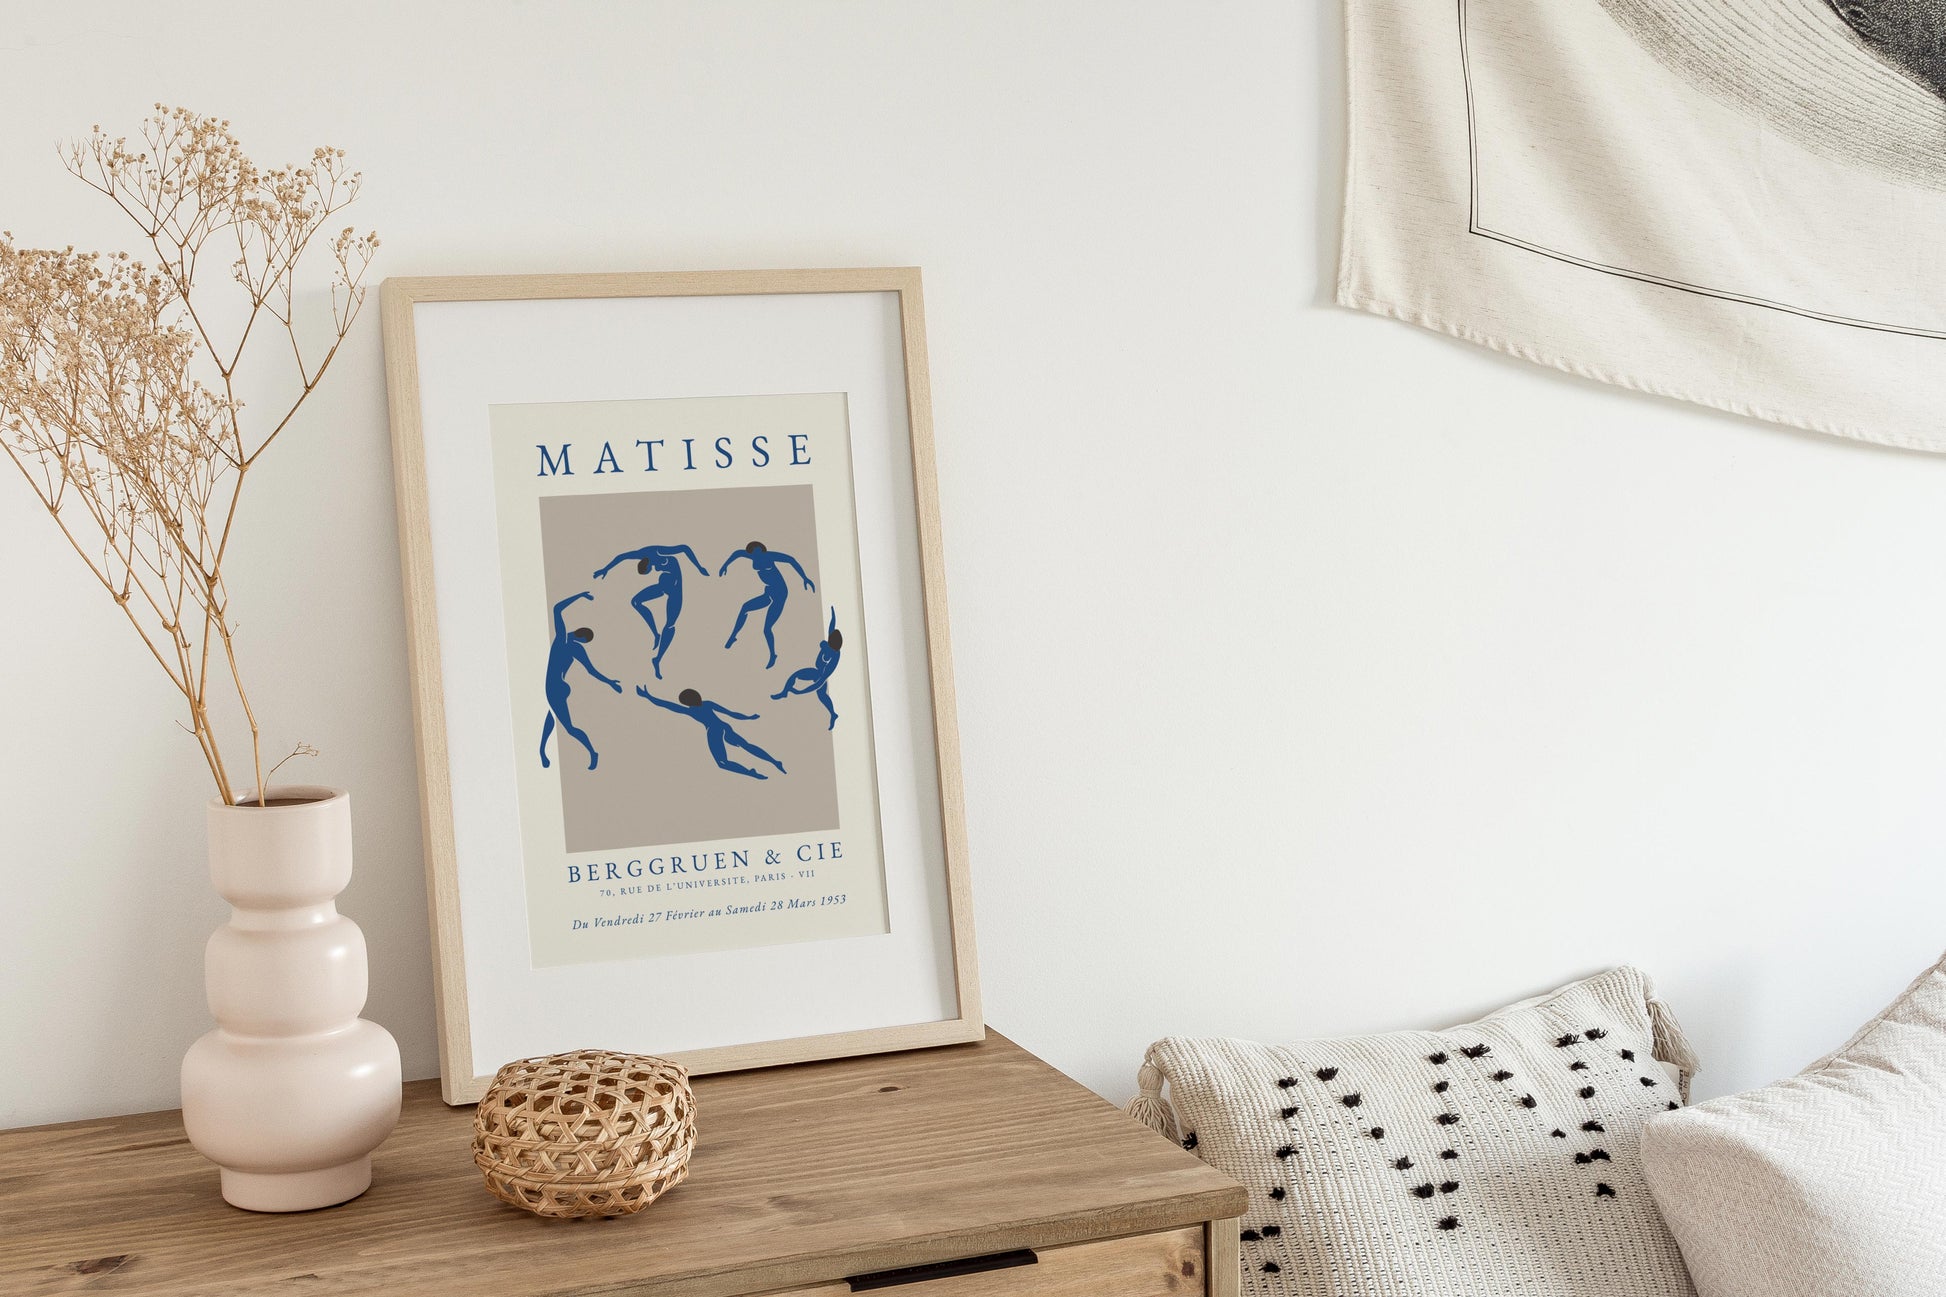 Dancing Matisse print in blue